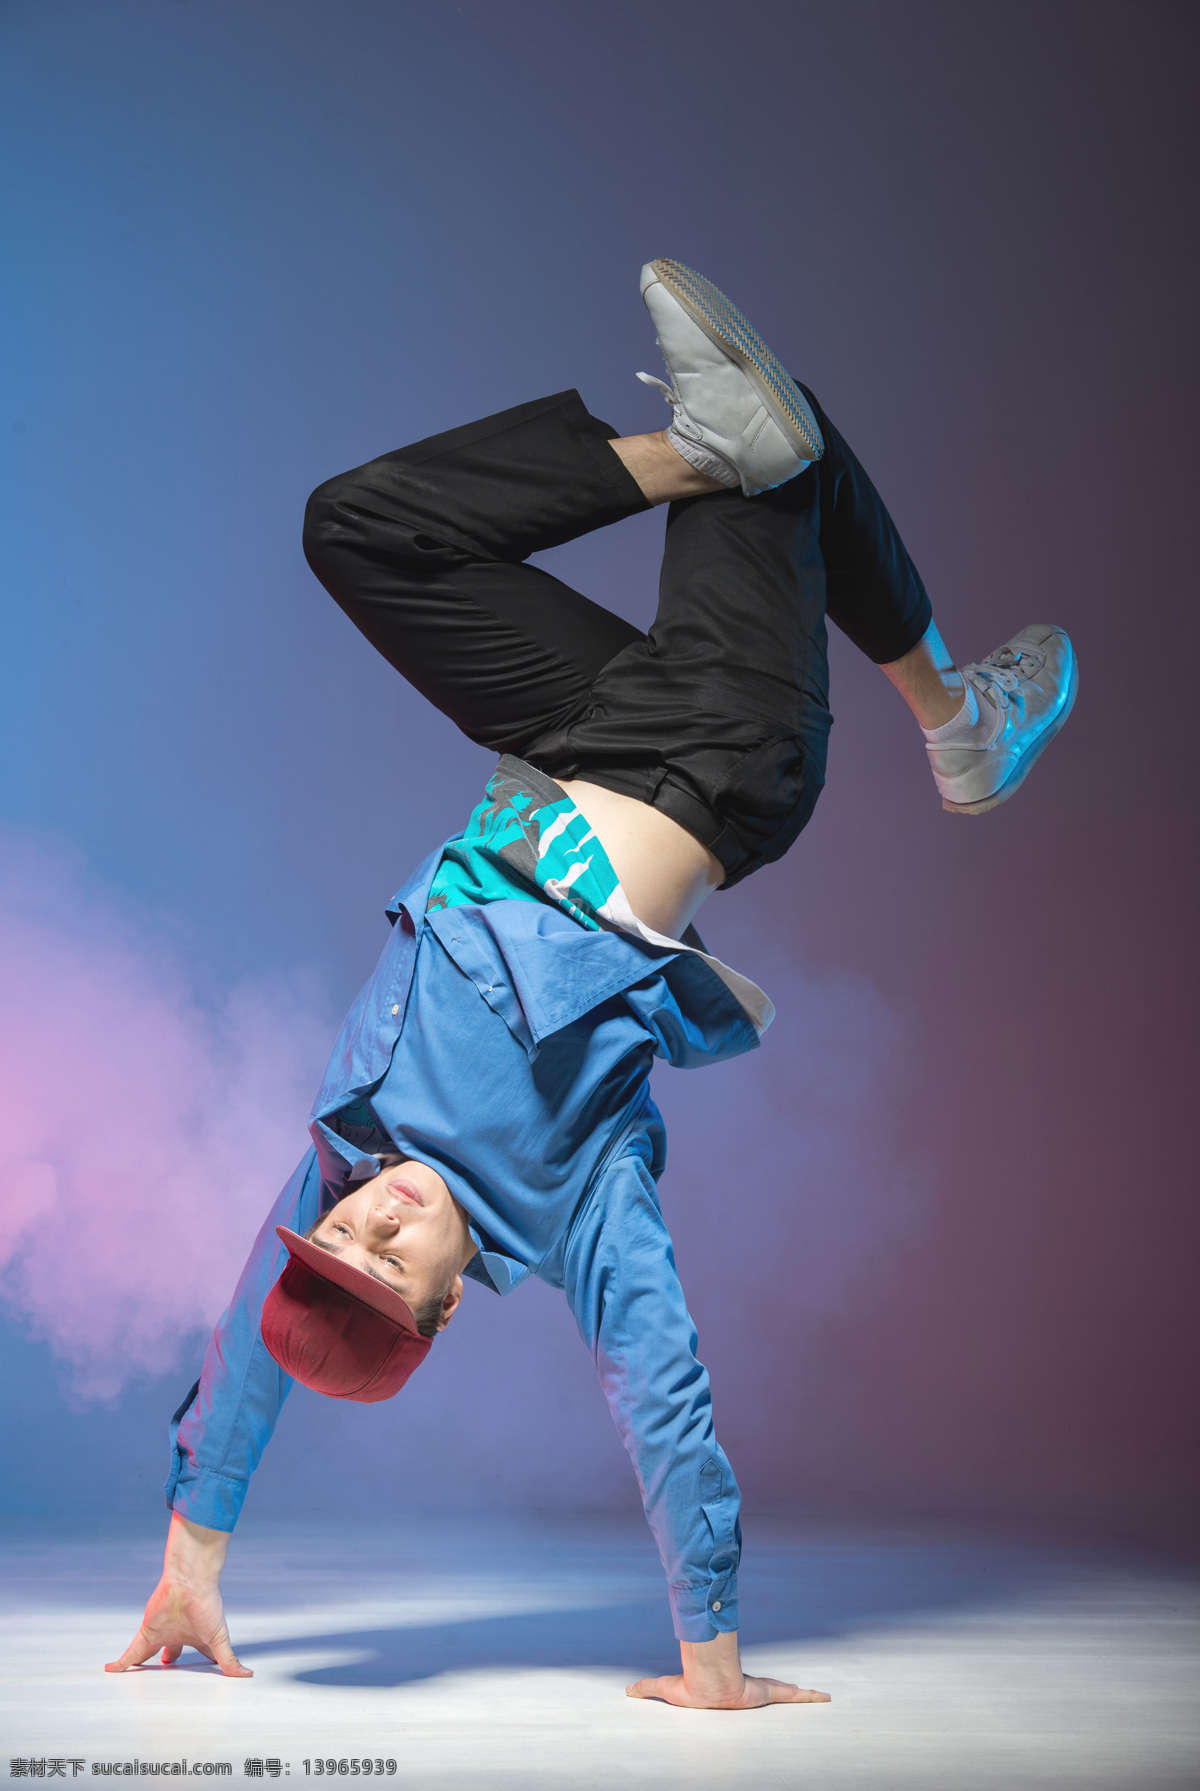 倒立 跳舞 男人 舞者 嘻哈舞者 舞蹈家 艺术家 人物图库 人物摄影 街舞 男性 生活人物 人物图片